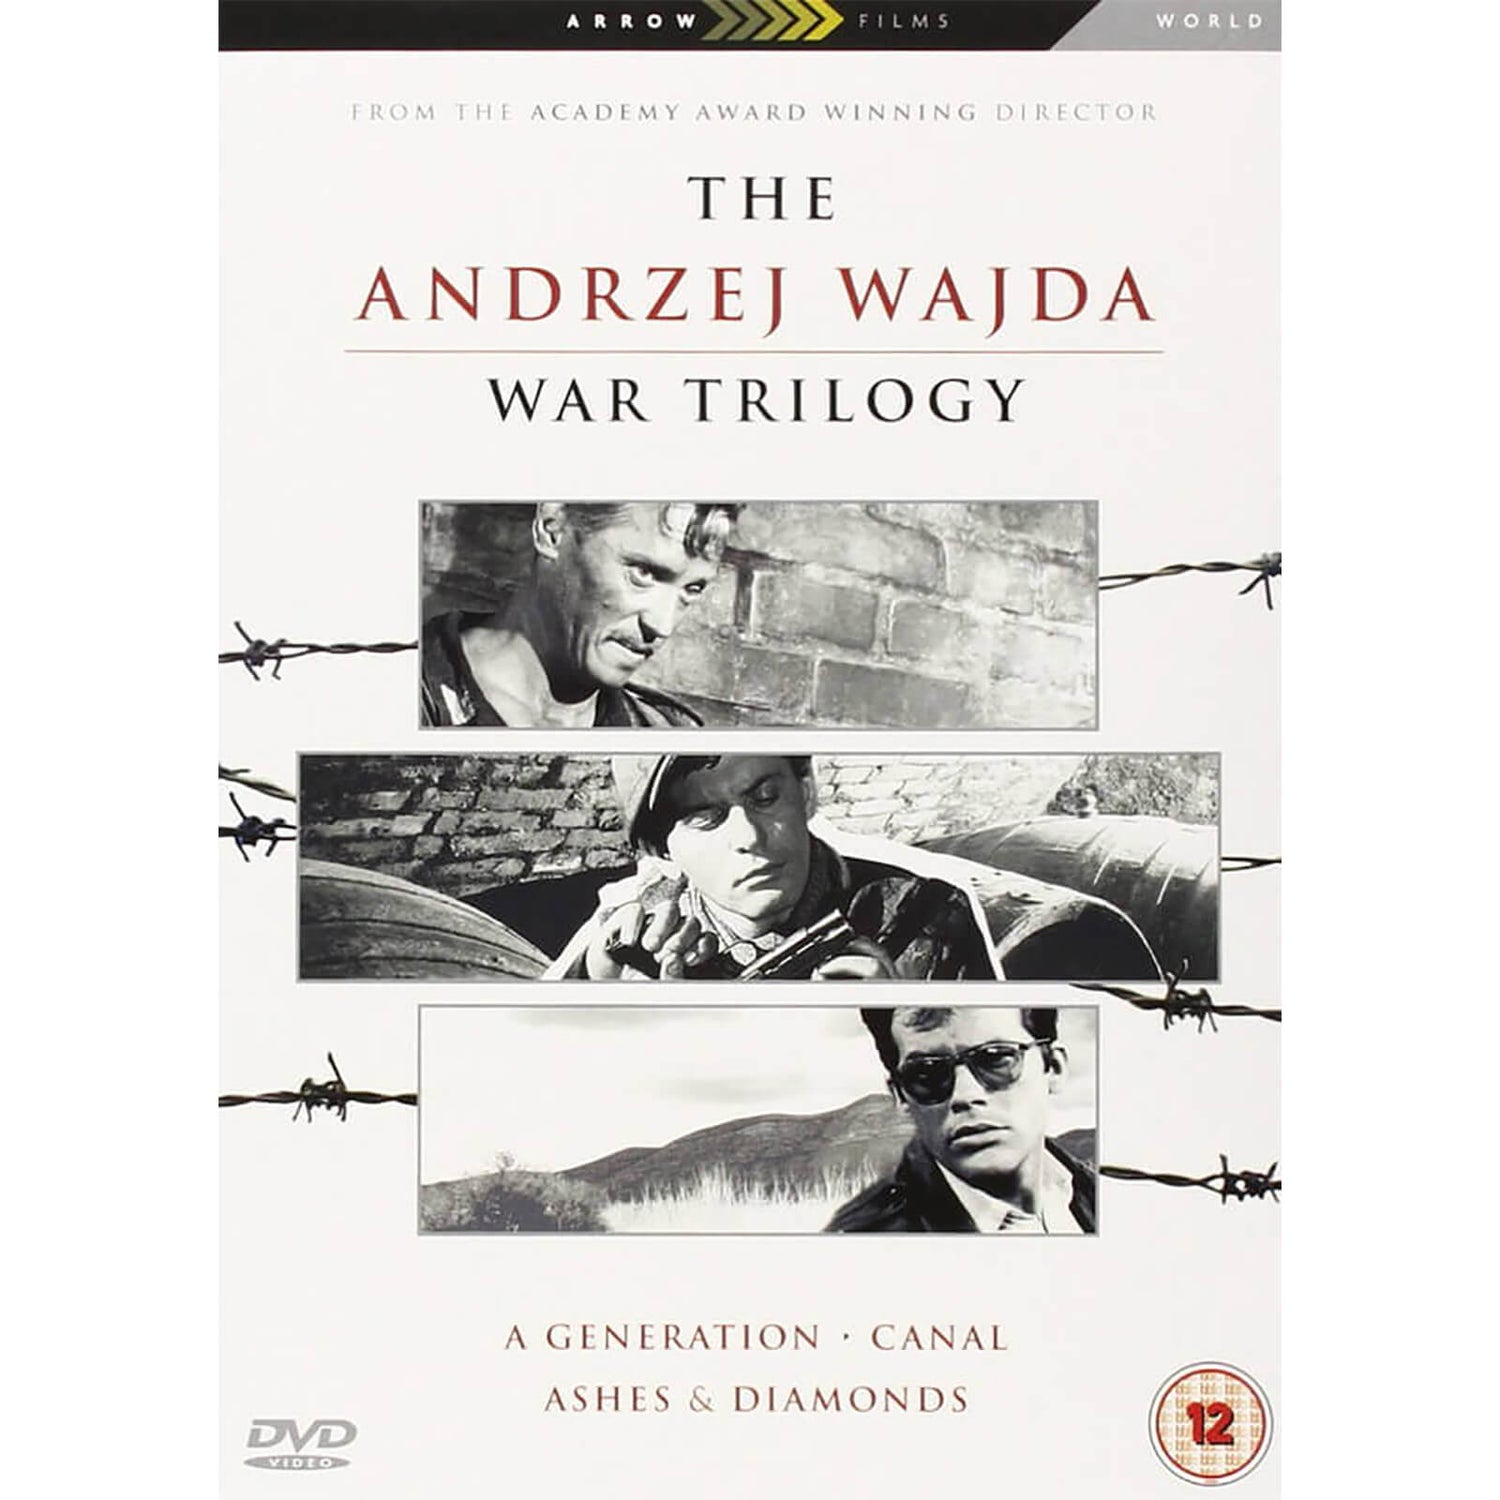 The Andzrej Wajda War Trilogy